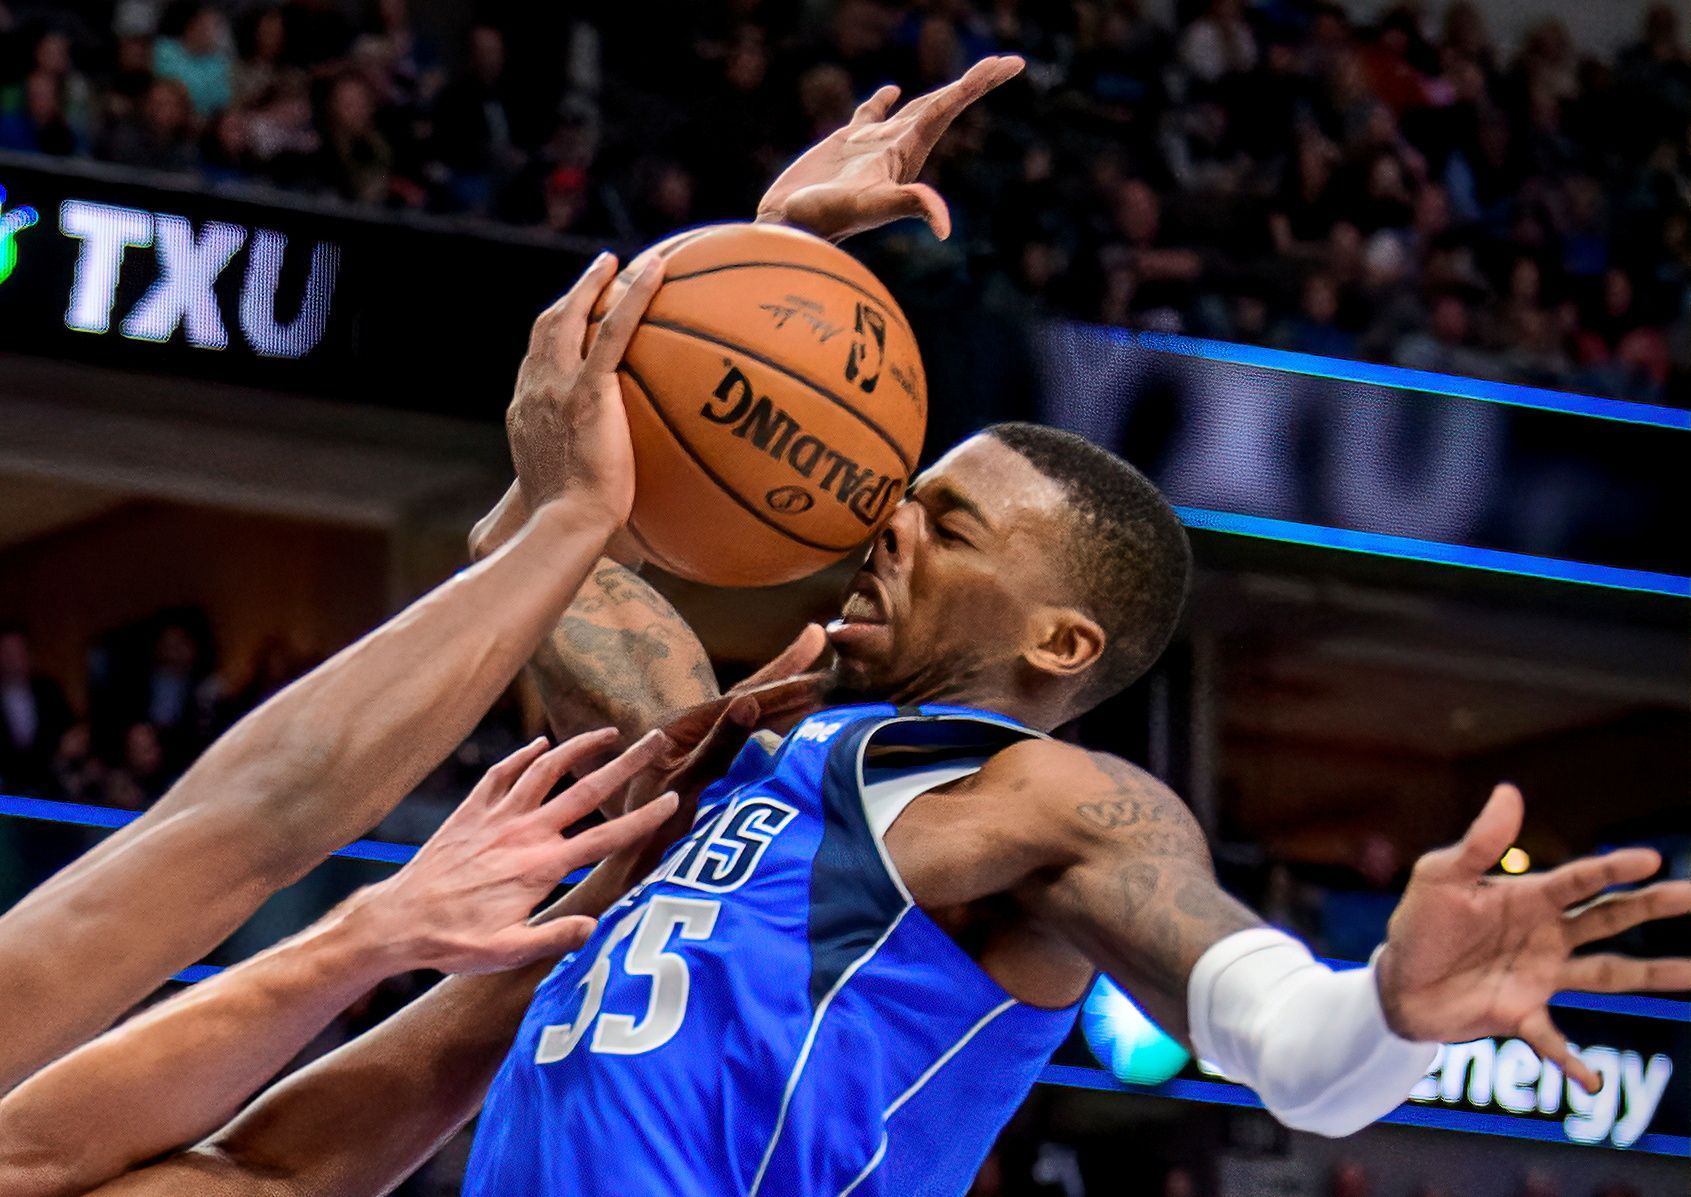 Nejhezčí fotky Reuters 2020 - Delon Wright z Dallasu v zápase NBA s Atlantou.